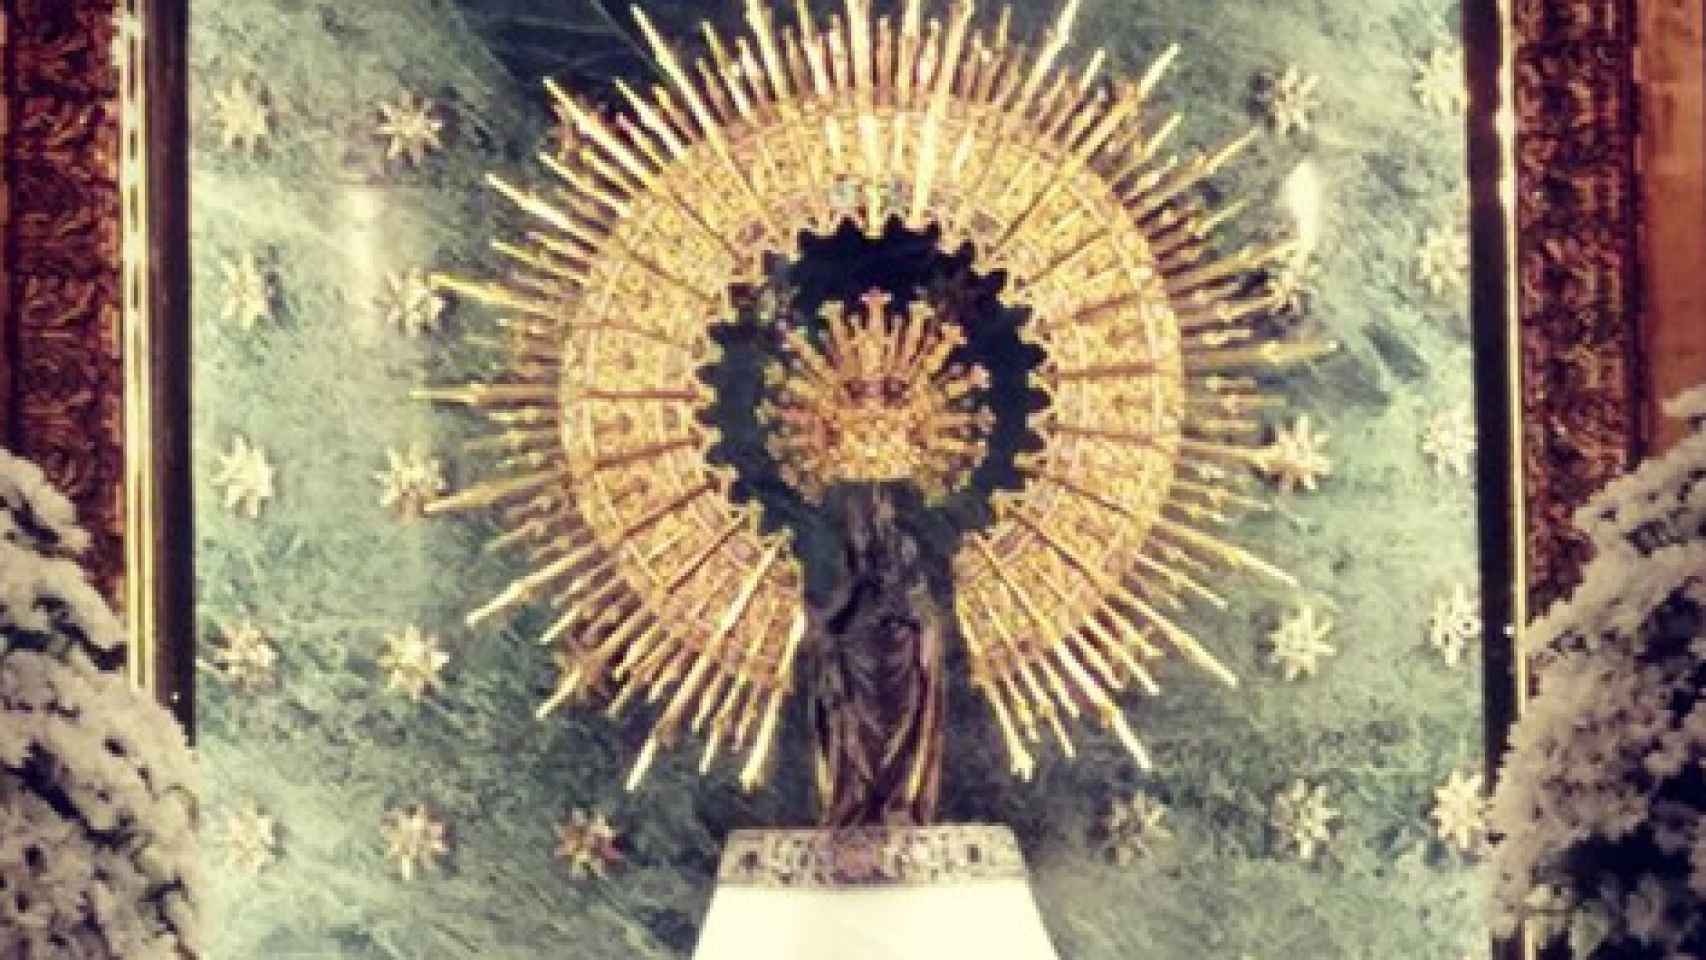 Santo del día 12 de octubre: Nuestra Señora del Pilar. Santoral católico